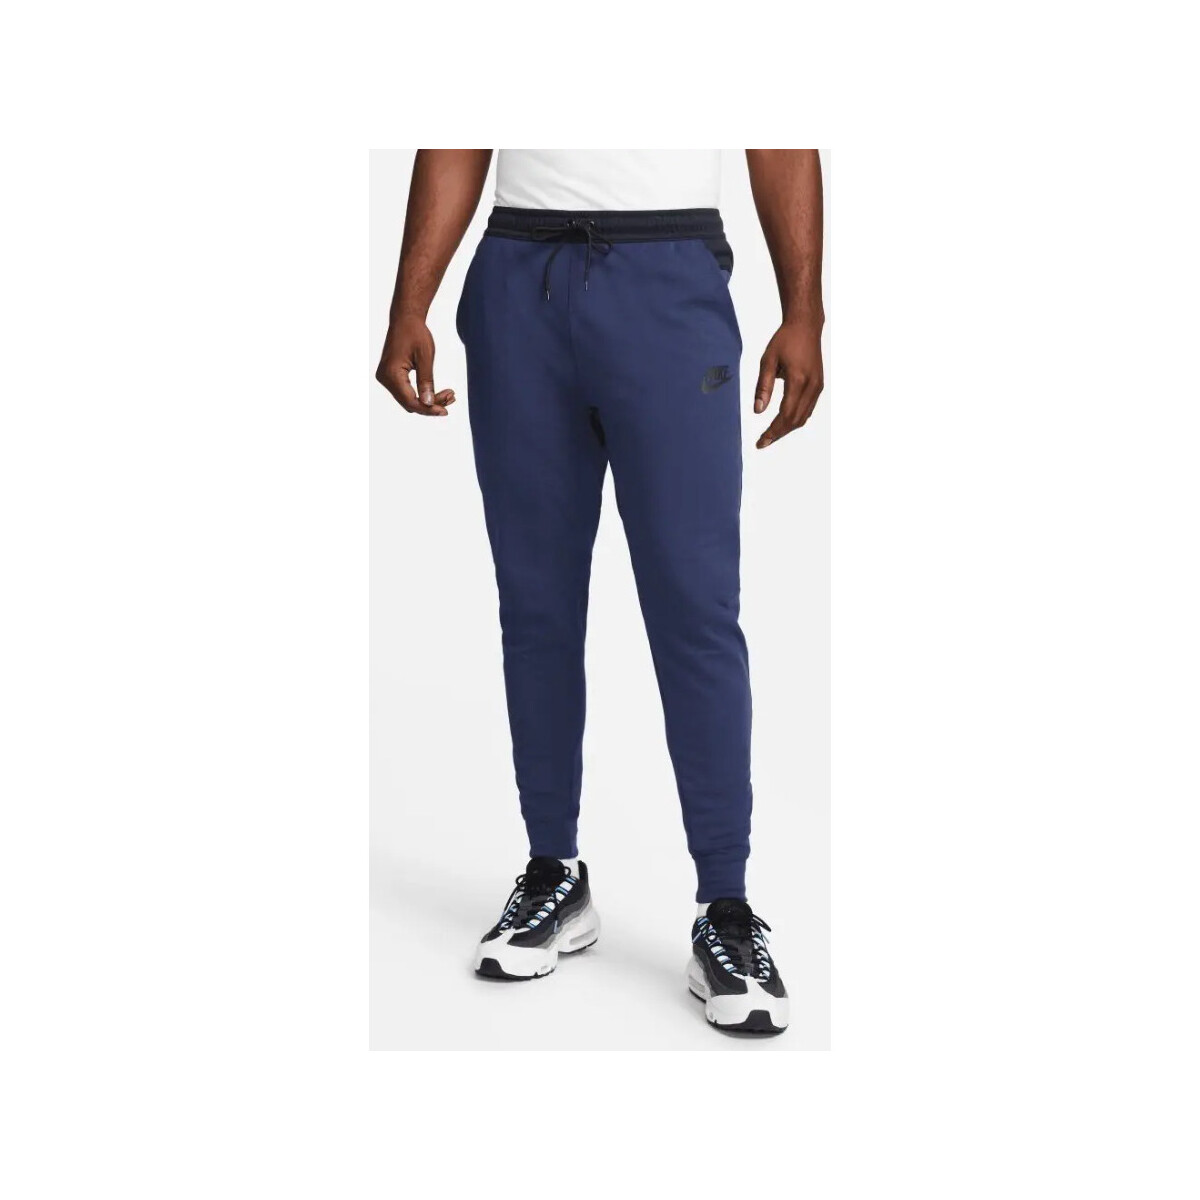 Vêtements Homme Pantalons Nike - Pantalon de jogging - marine Marine